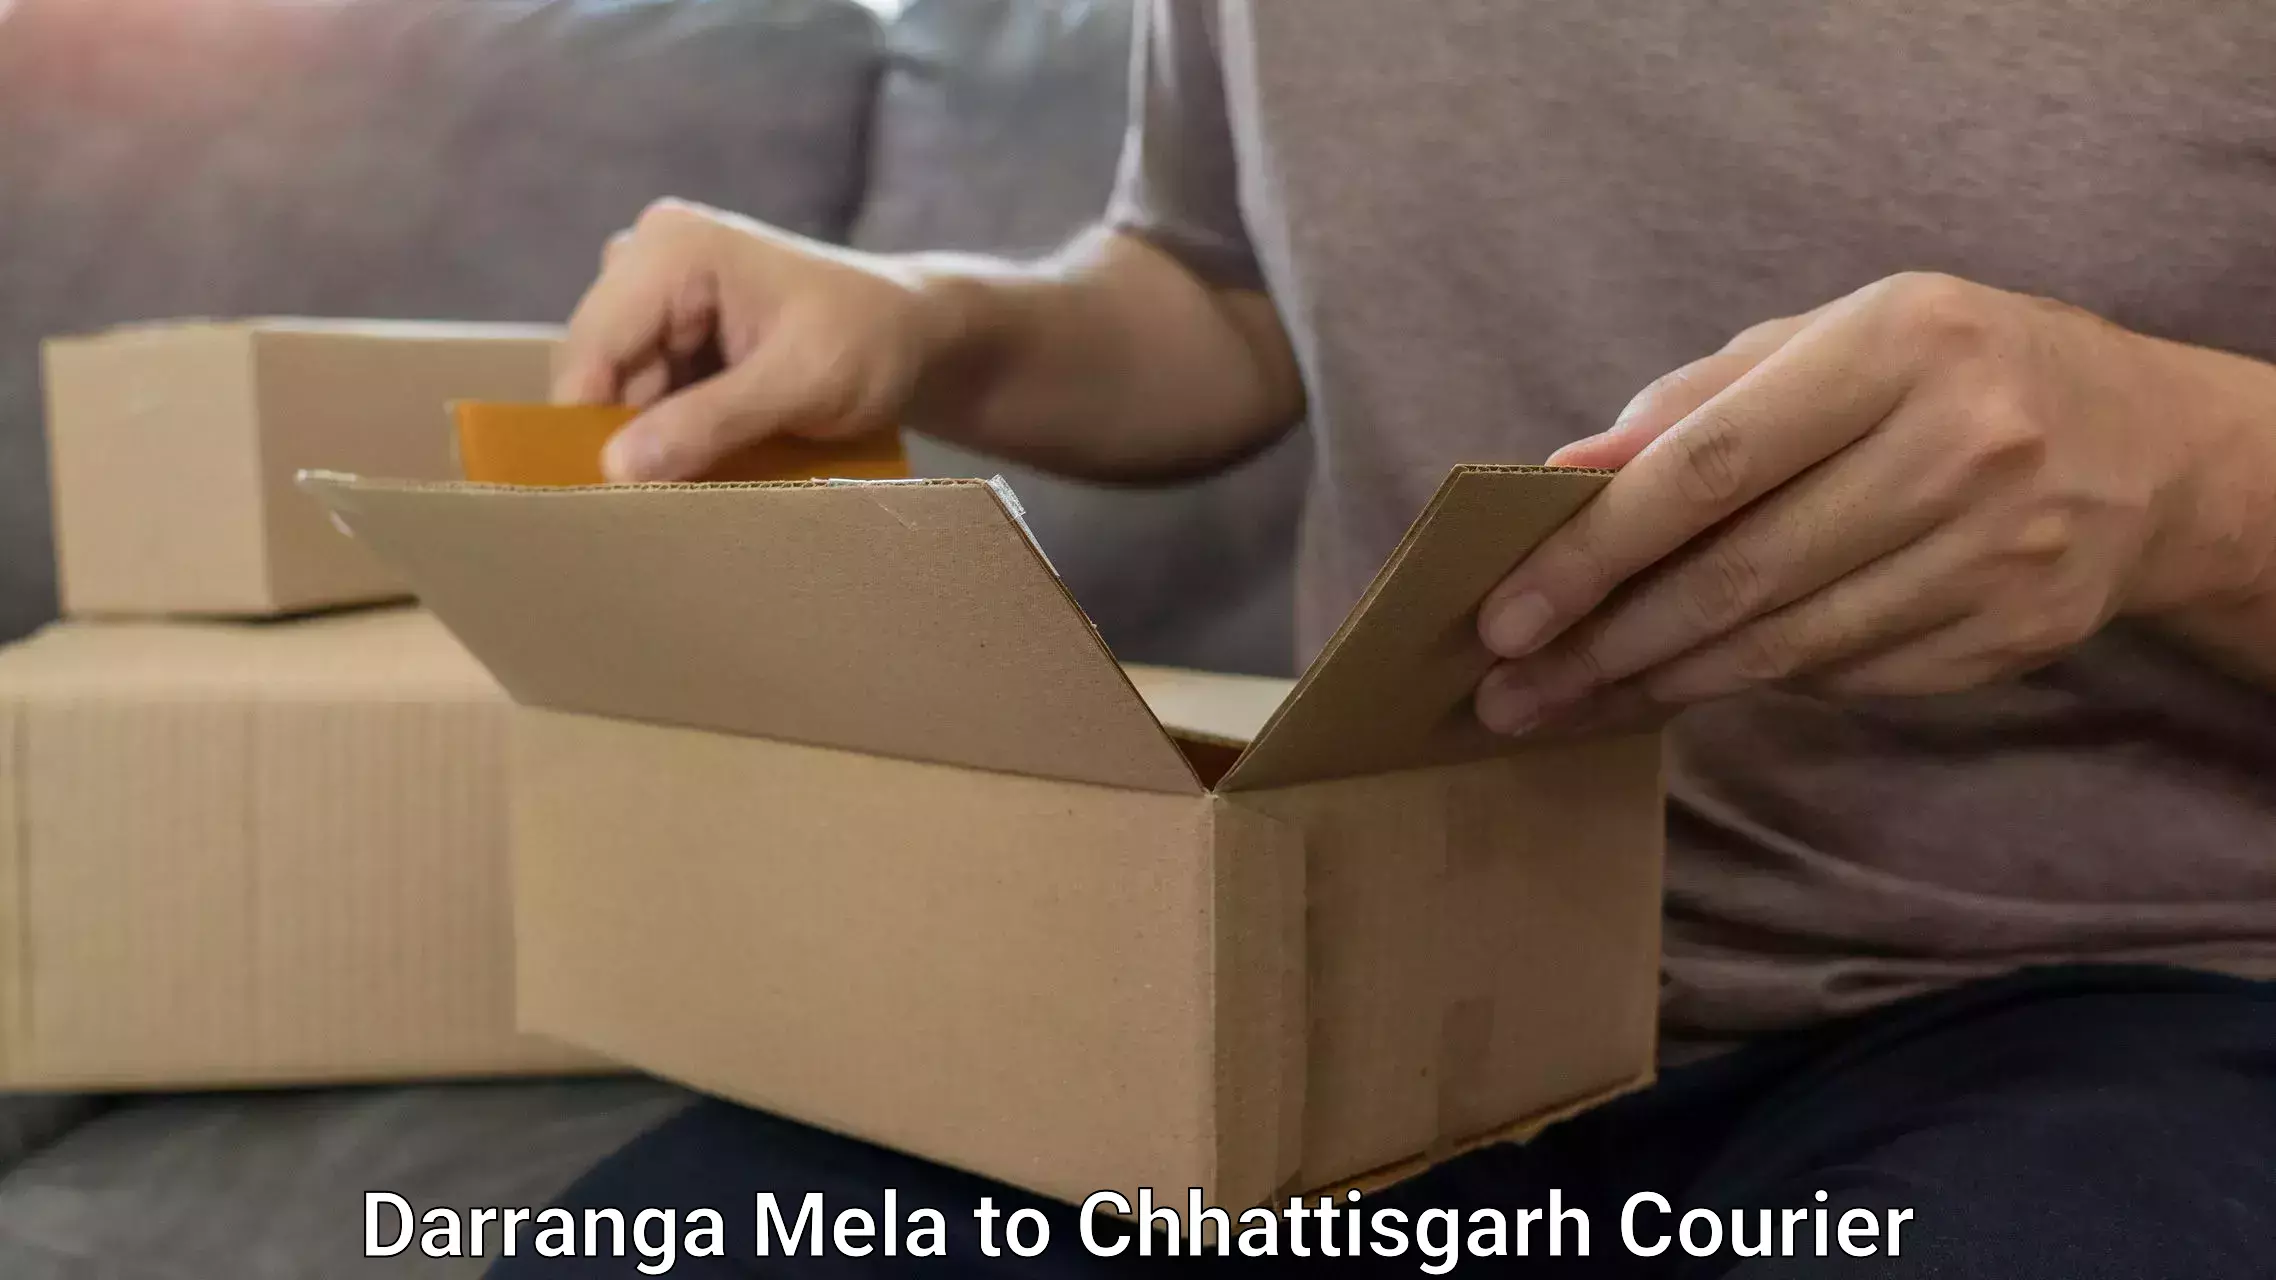 Luggage shipping rates calculator Darranga Mela to Bhatapara